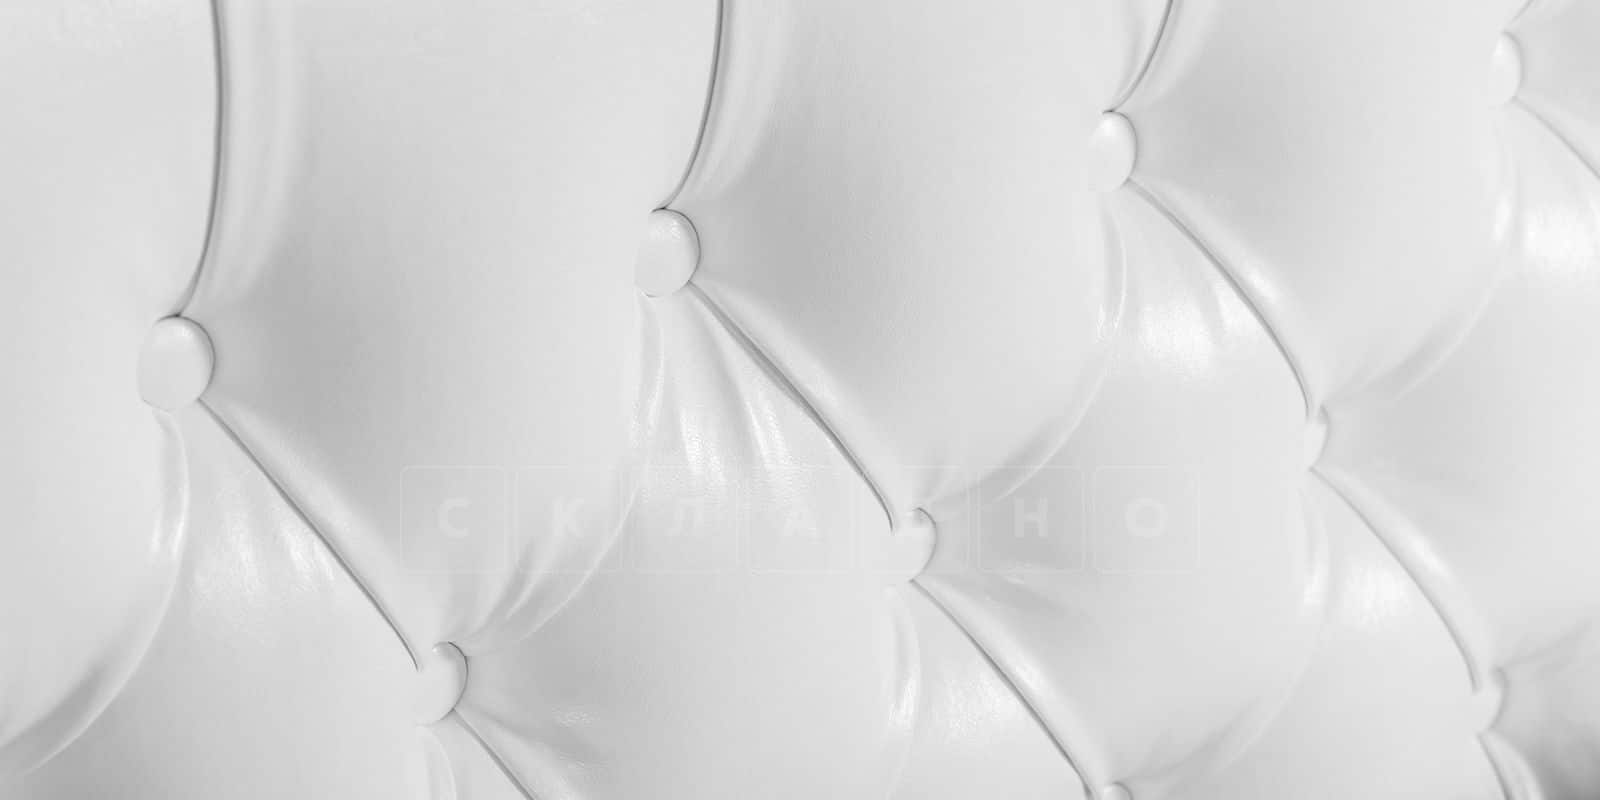 Мягкая кровать Малибу 160см экокожа белого цвета вариант 1-2 фото 5 | интернет-магазин Складно